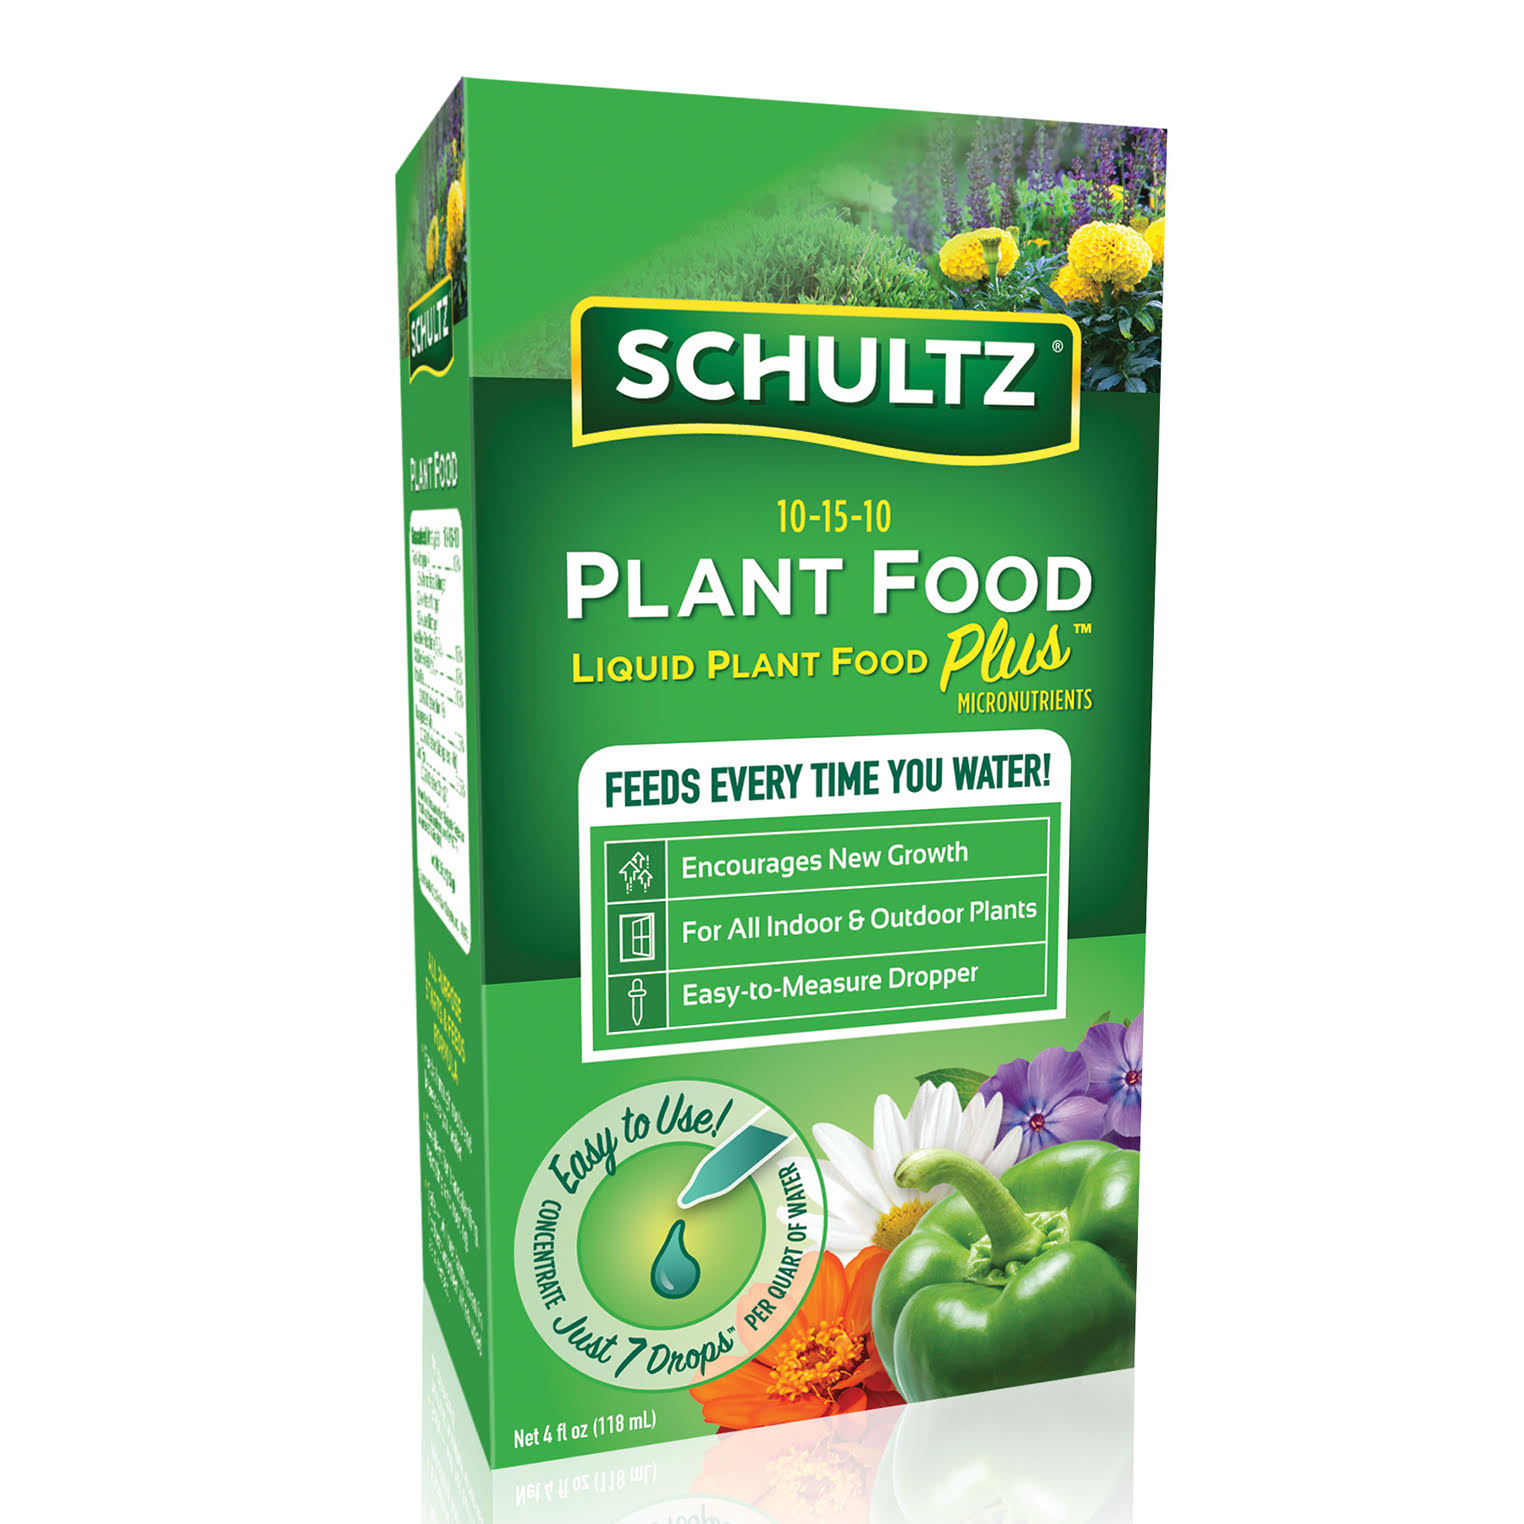 Knox Fertilizer -Liquid Plant Food copy 2